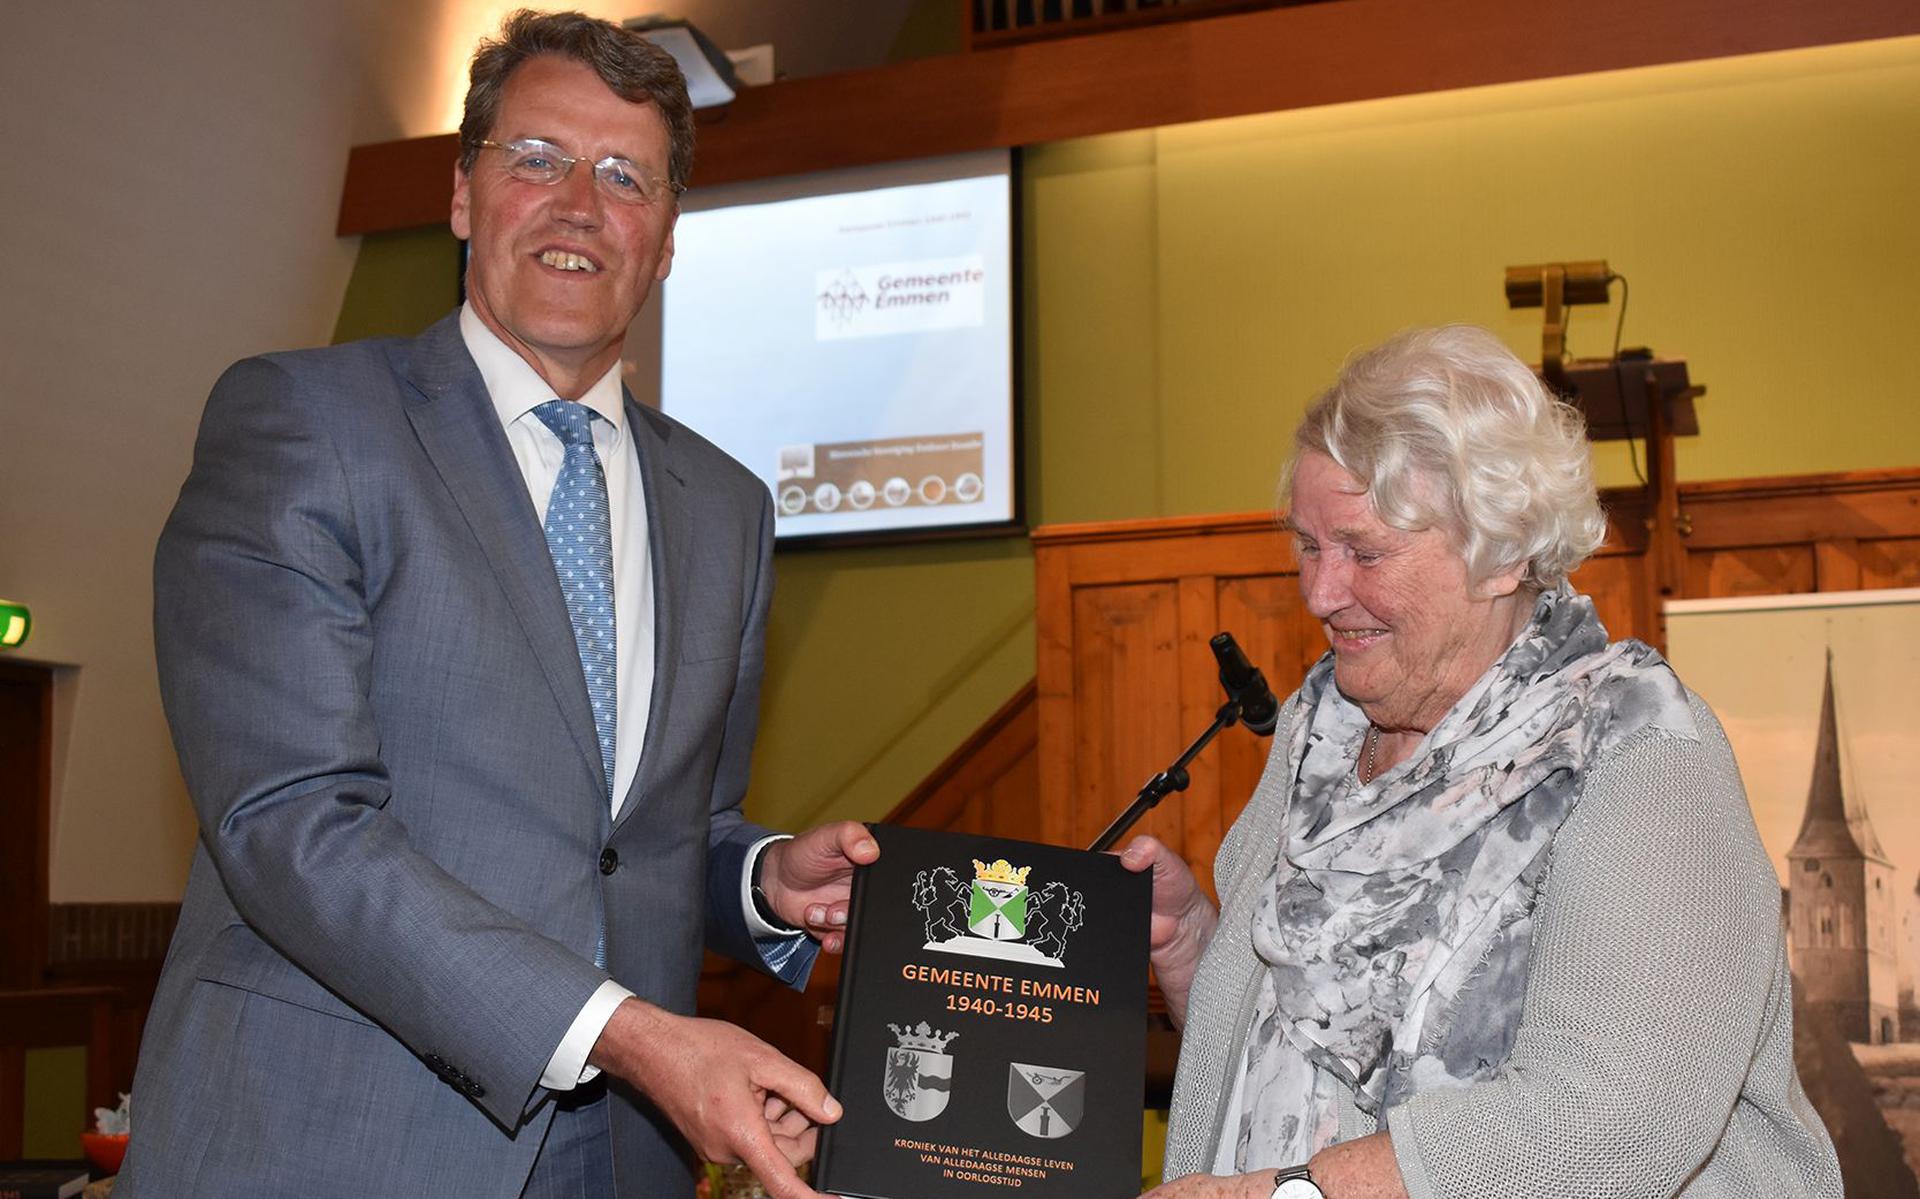 Schrijfster Sis Hoek-Beugeling reikt haar boek uit aan burgemeester Eric van Oosterhout.